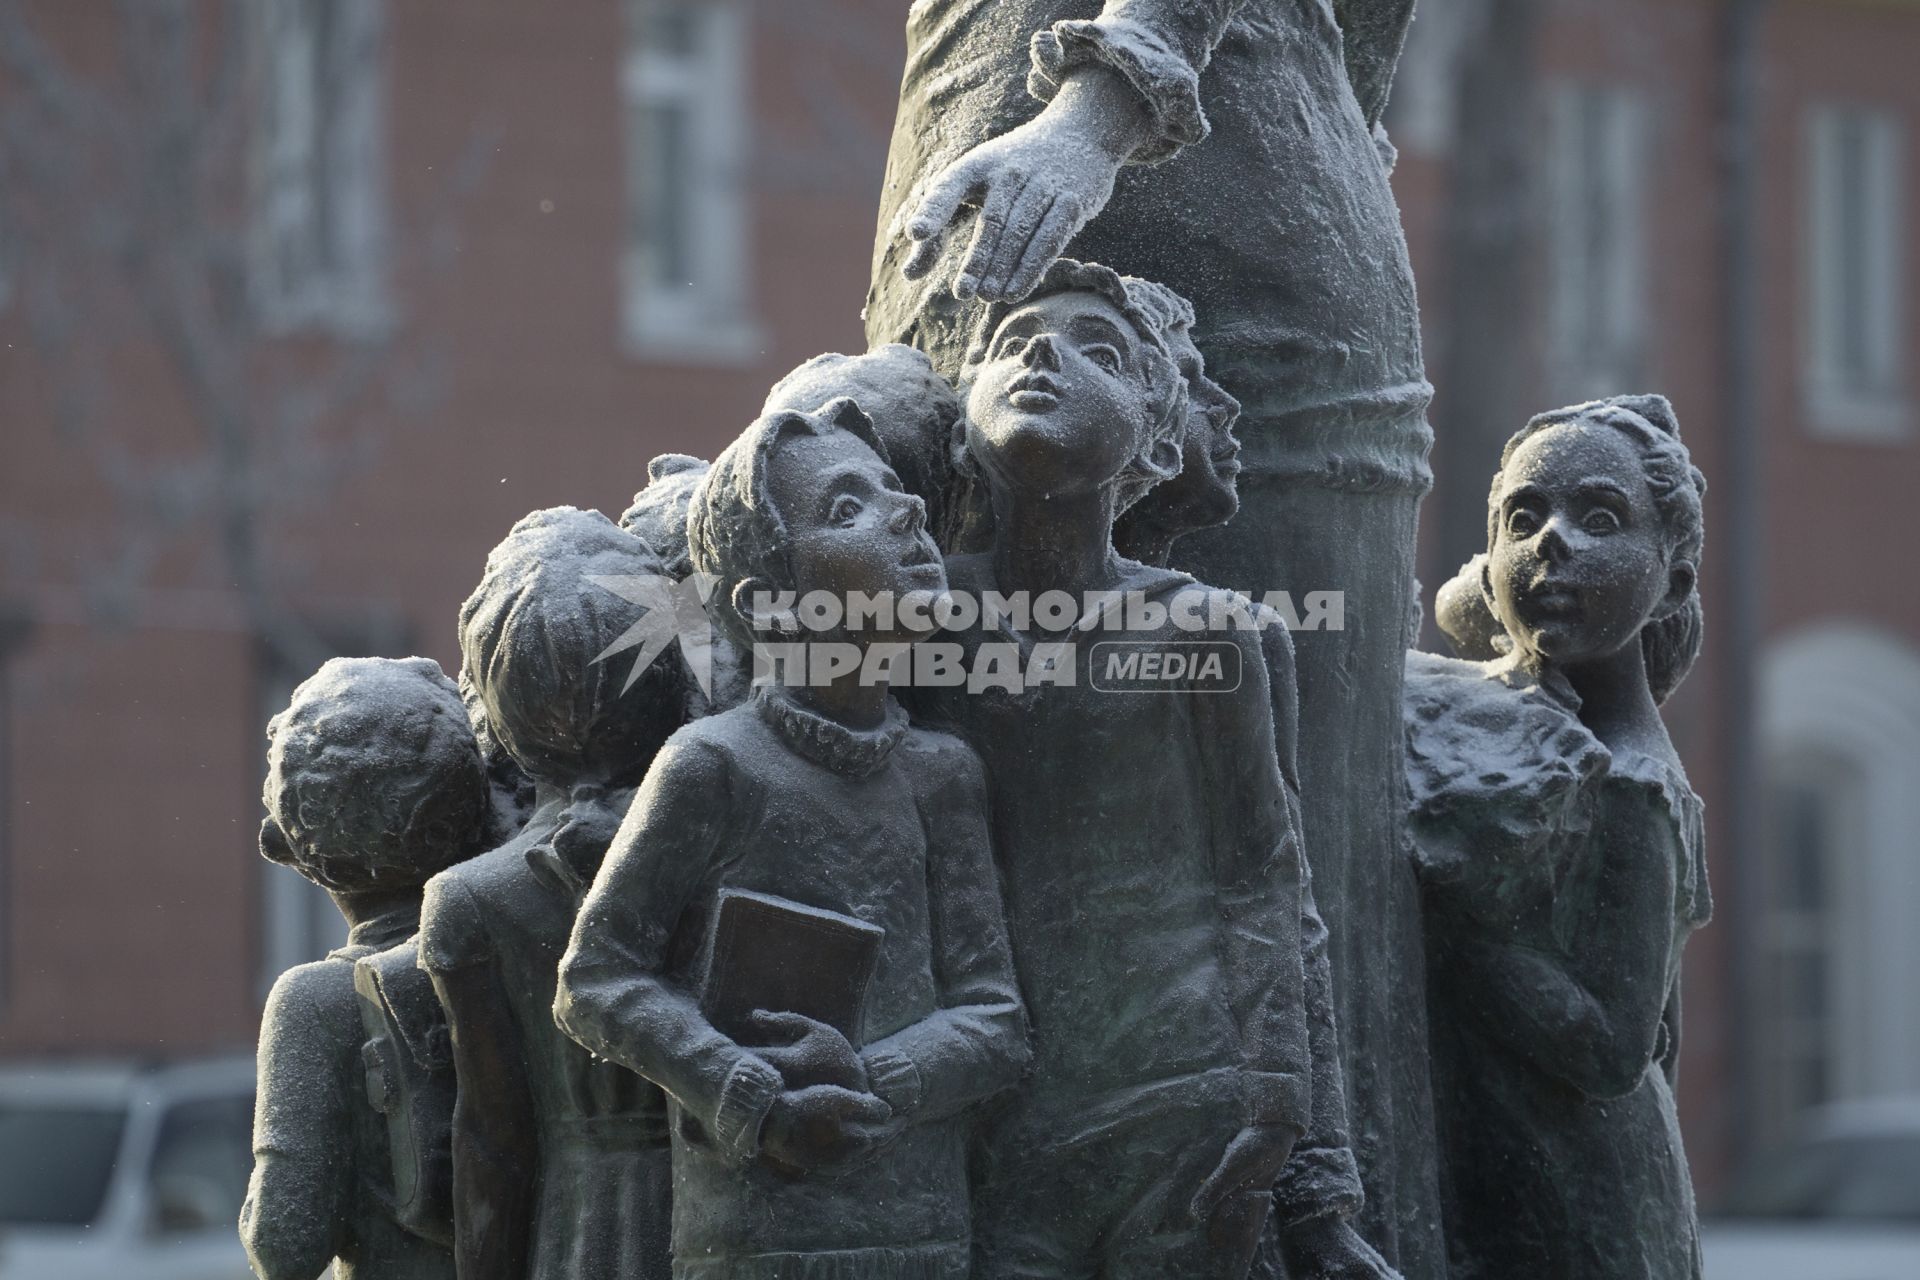 Иркутск. Памятник, покрытый инеем на улице города.